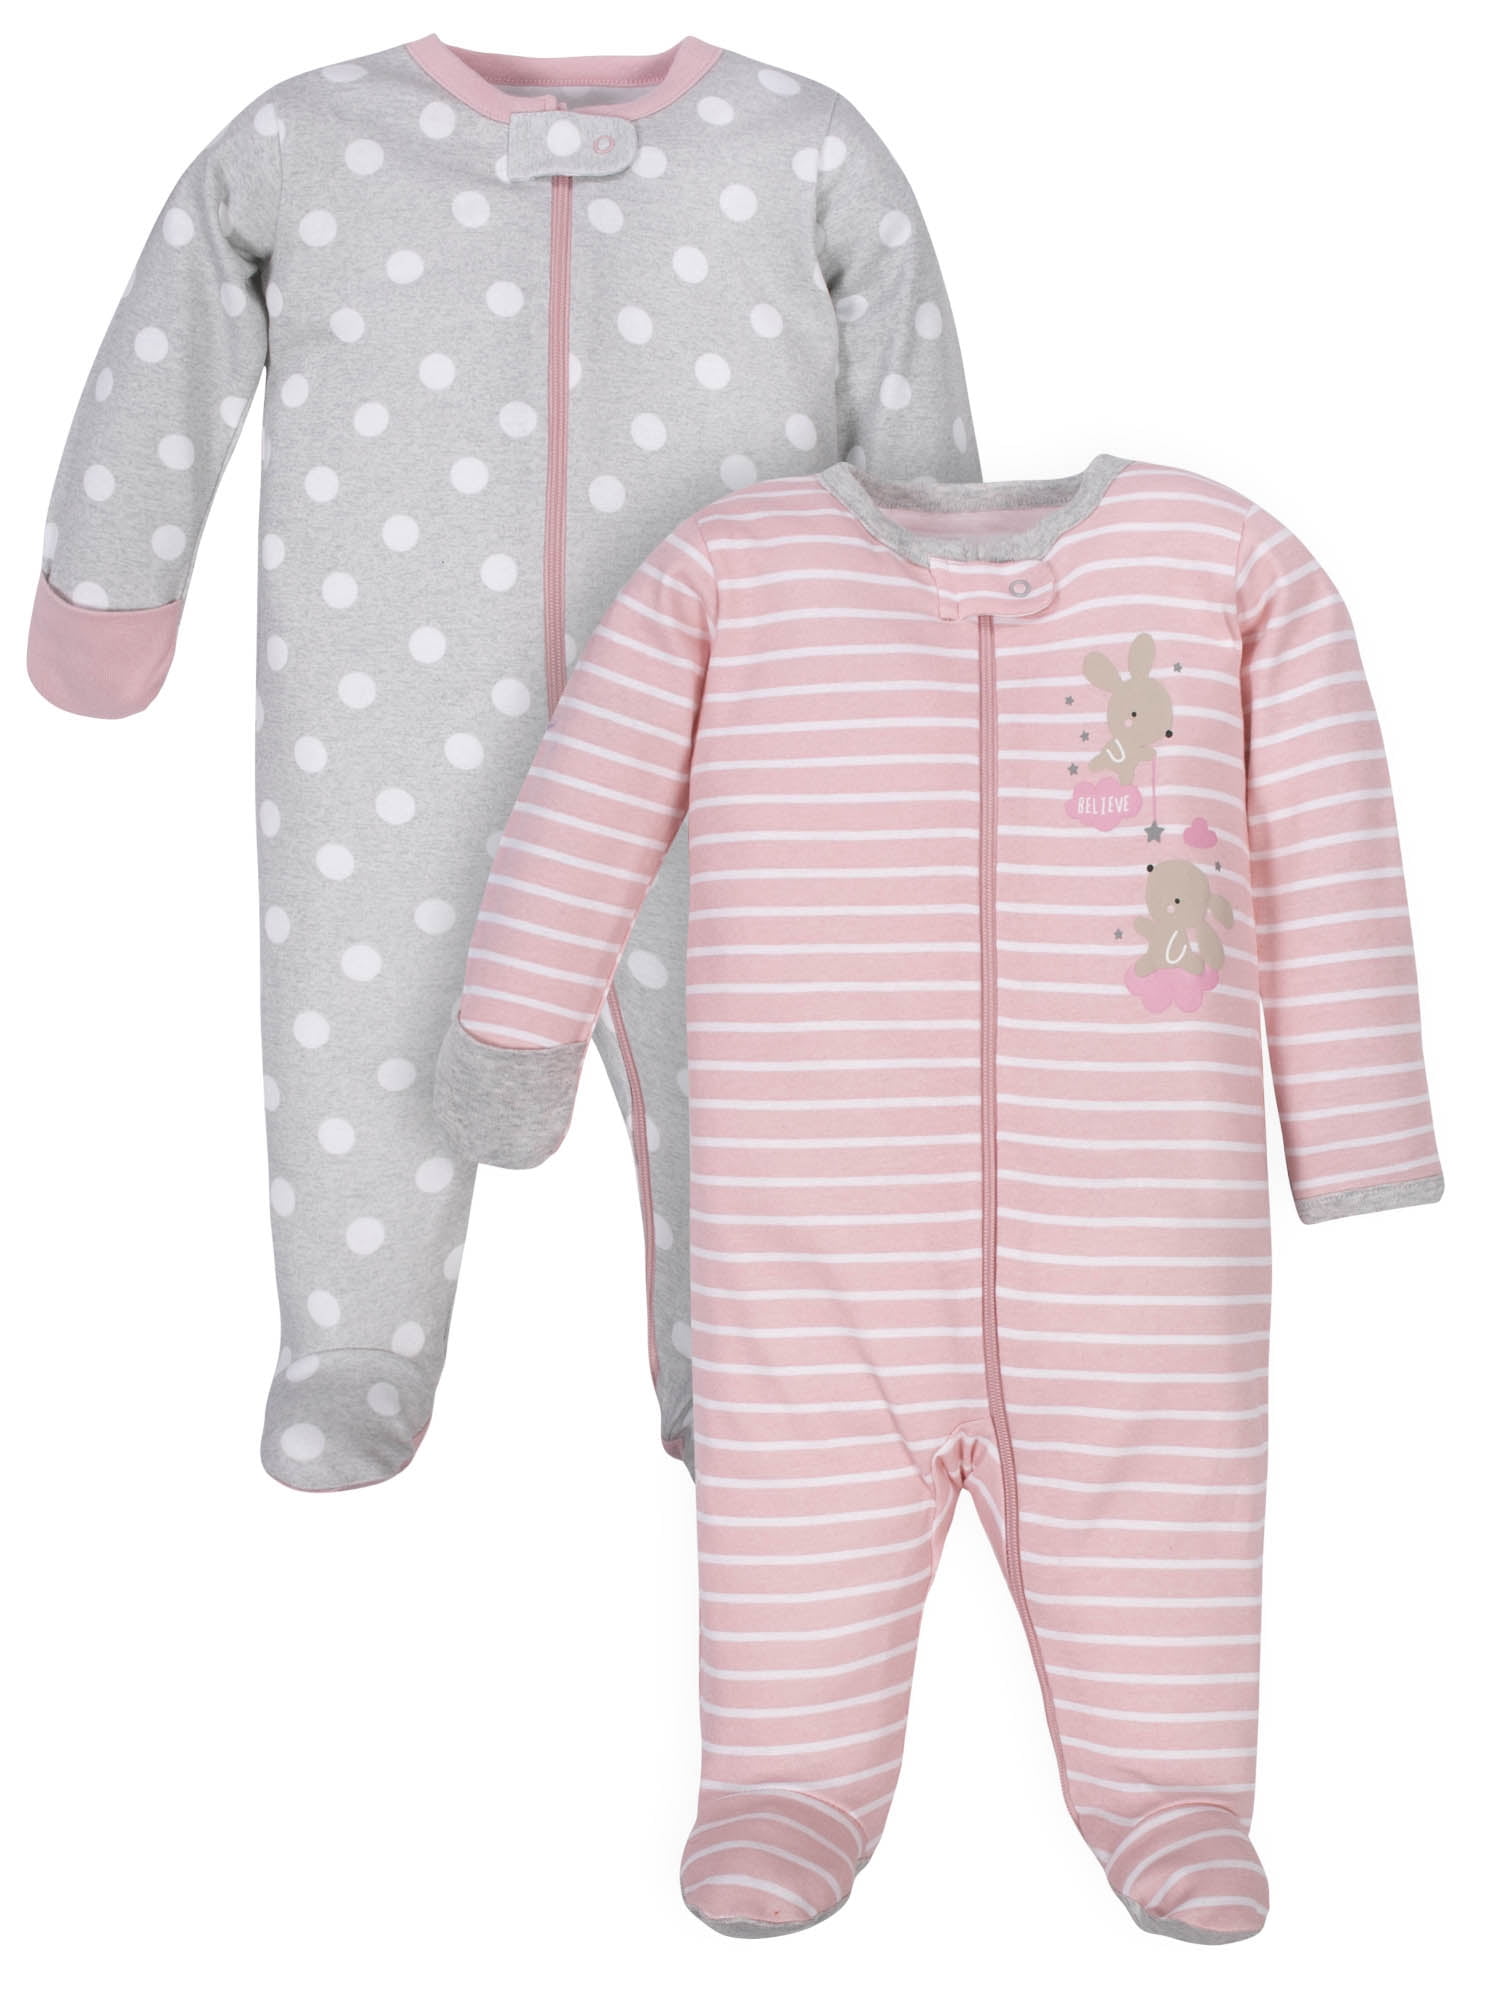 Baby Footed Pajamas with Mitten Cuffs Unisex Newborn Infant 2 Ways Zipper Cotton Footie Onesies